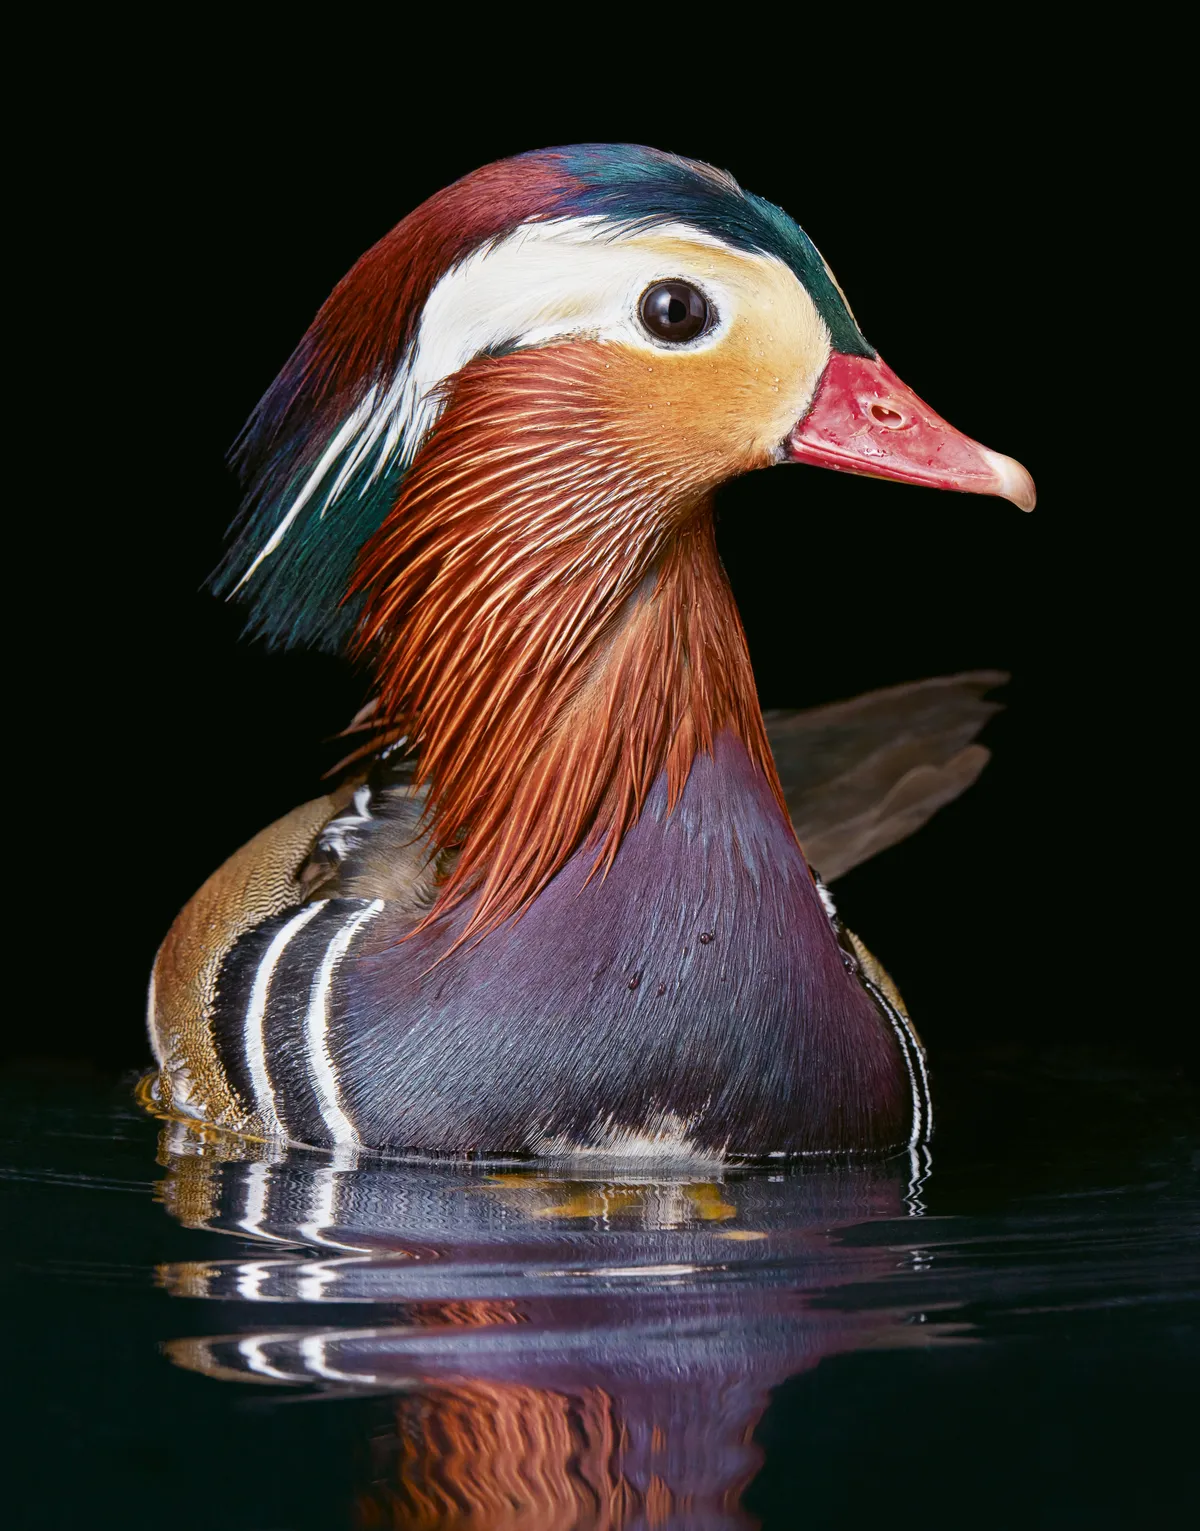 Mandarin duck. © 2021 Tim Flach